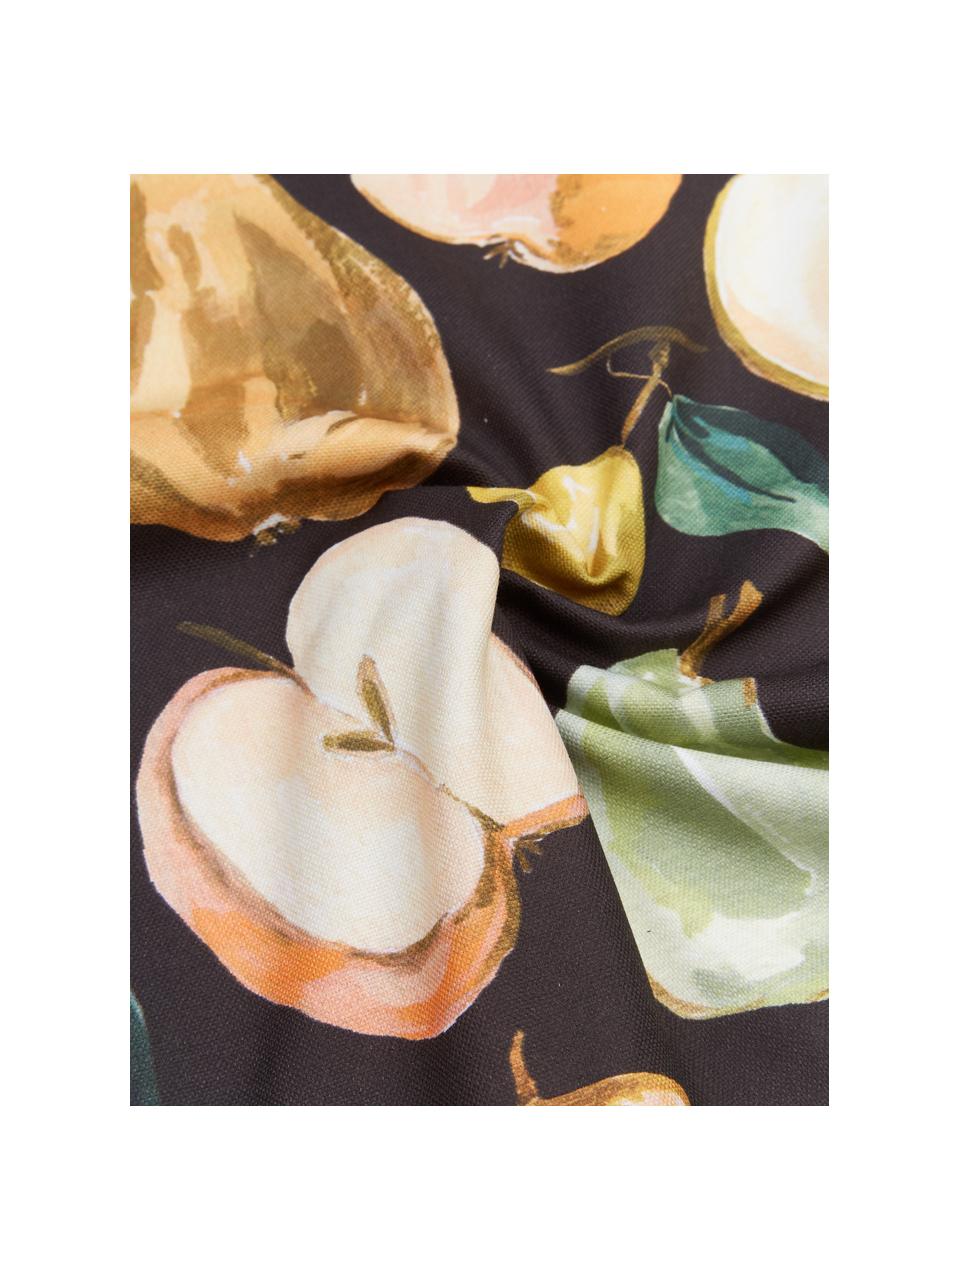 Poszewka na poduszkę Fruits od Candice Gray, 100% bawełna z certyfikatem GOTS, Wielobarwny, S 45 x D 45 cm